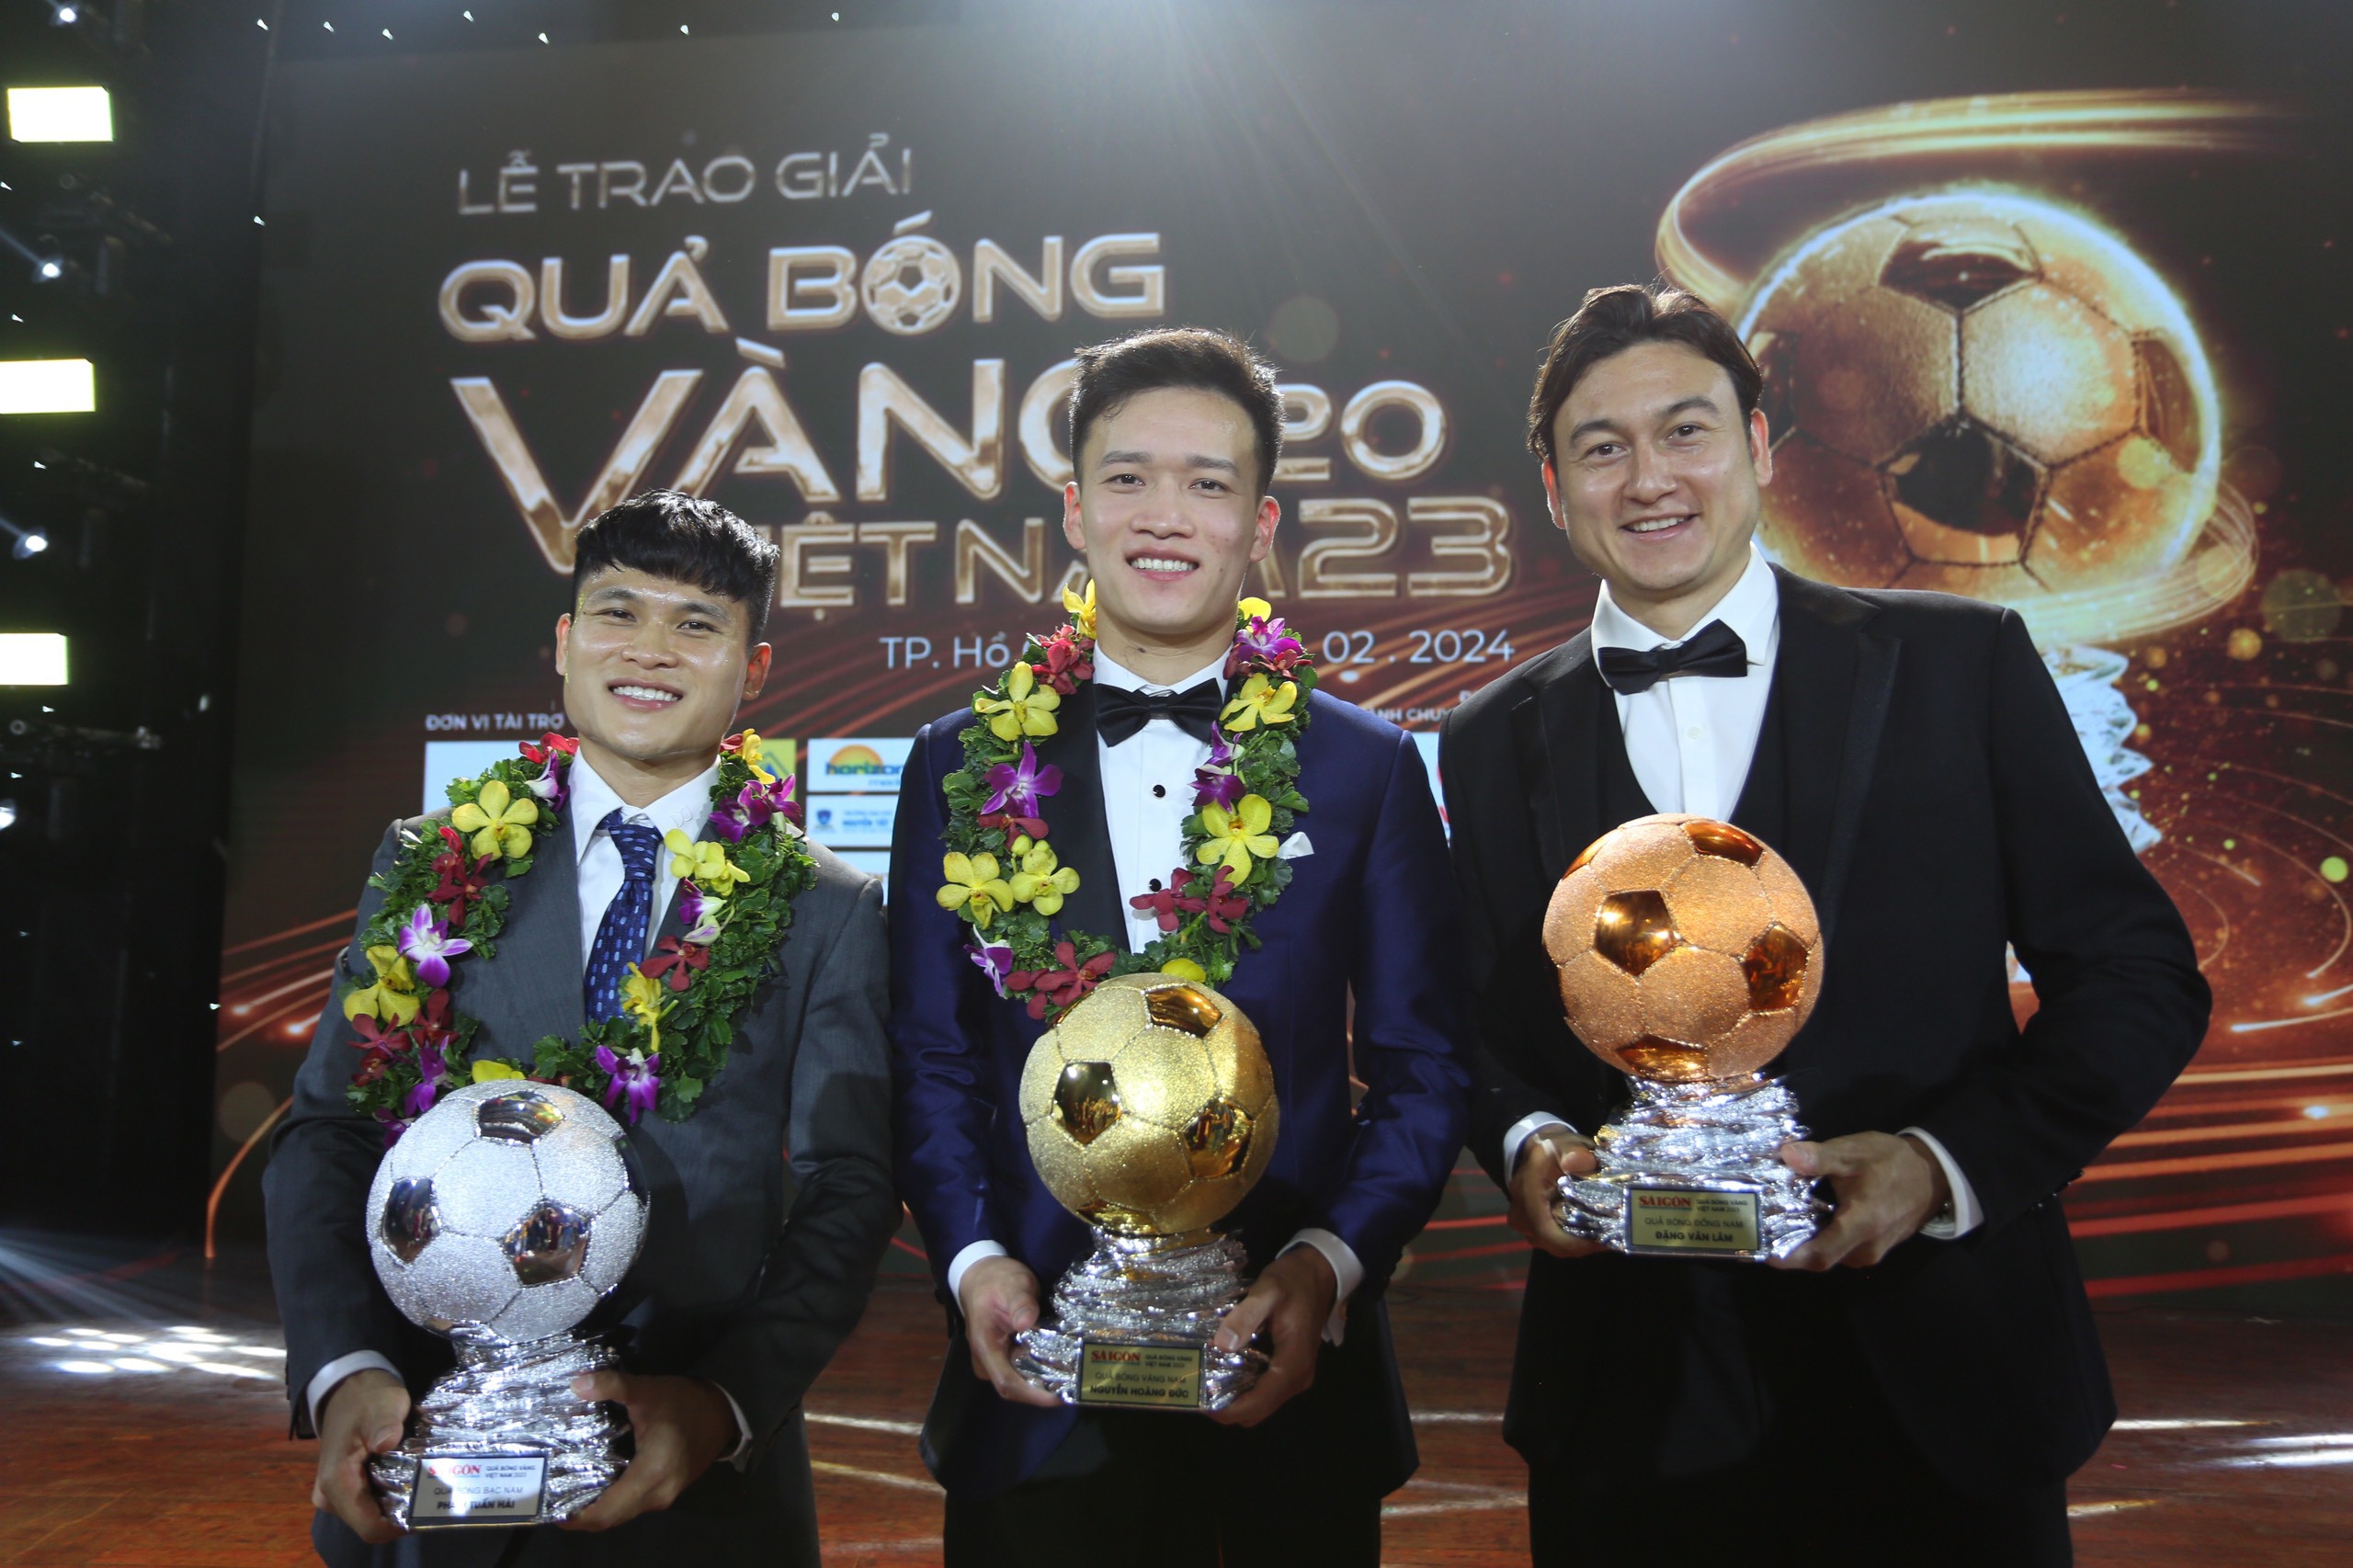 Vào buổi
tối ngày 19/2, giải thưởng Quả bóng vàng Việt Nam 2023 đã được diễn
ra. Ở lễ trao giải năm nay, tiền vệ Nguyễn Hoàng Đức đã&nbsp;đã
được vinh danh.&nbsp;